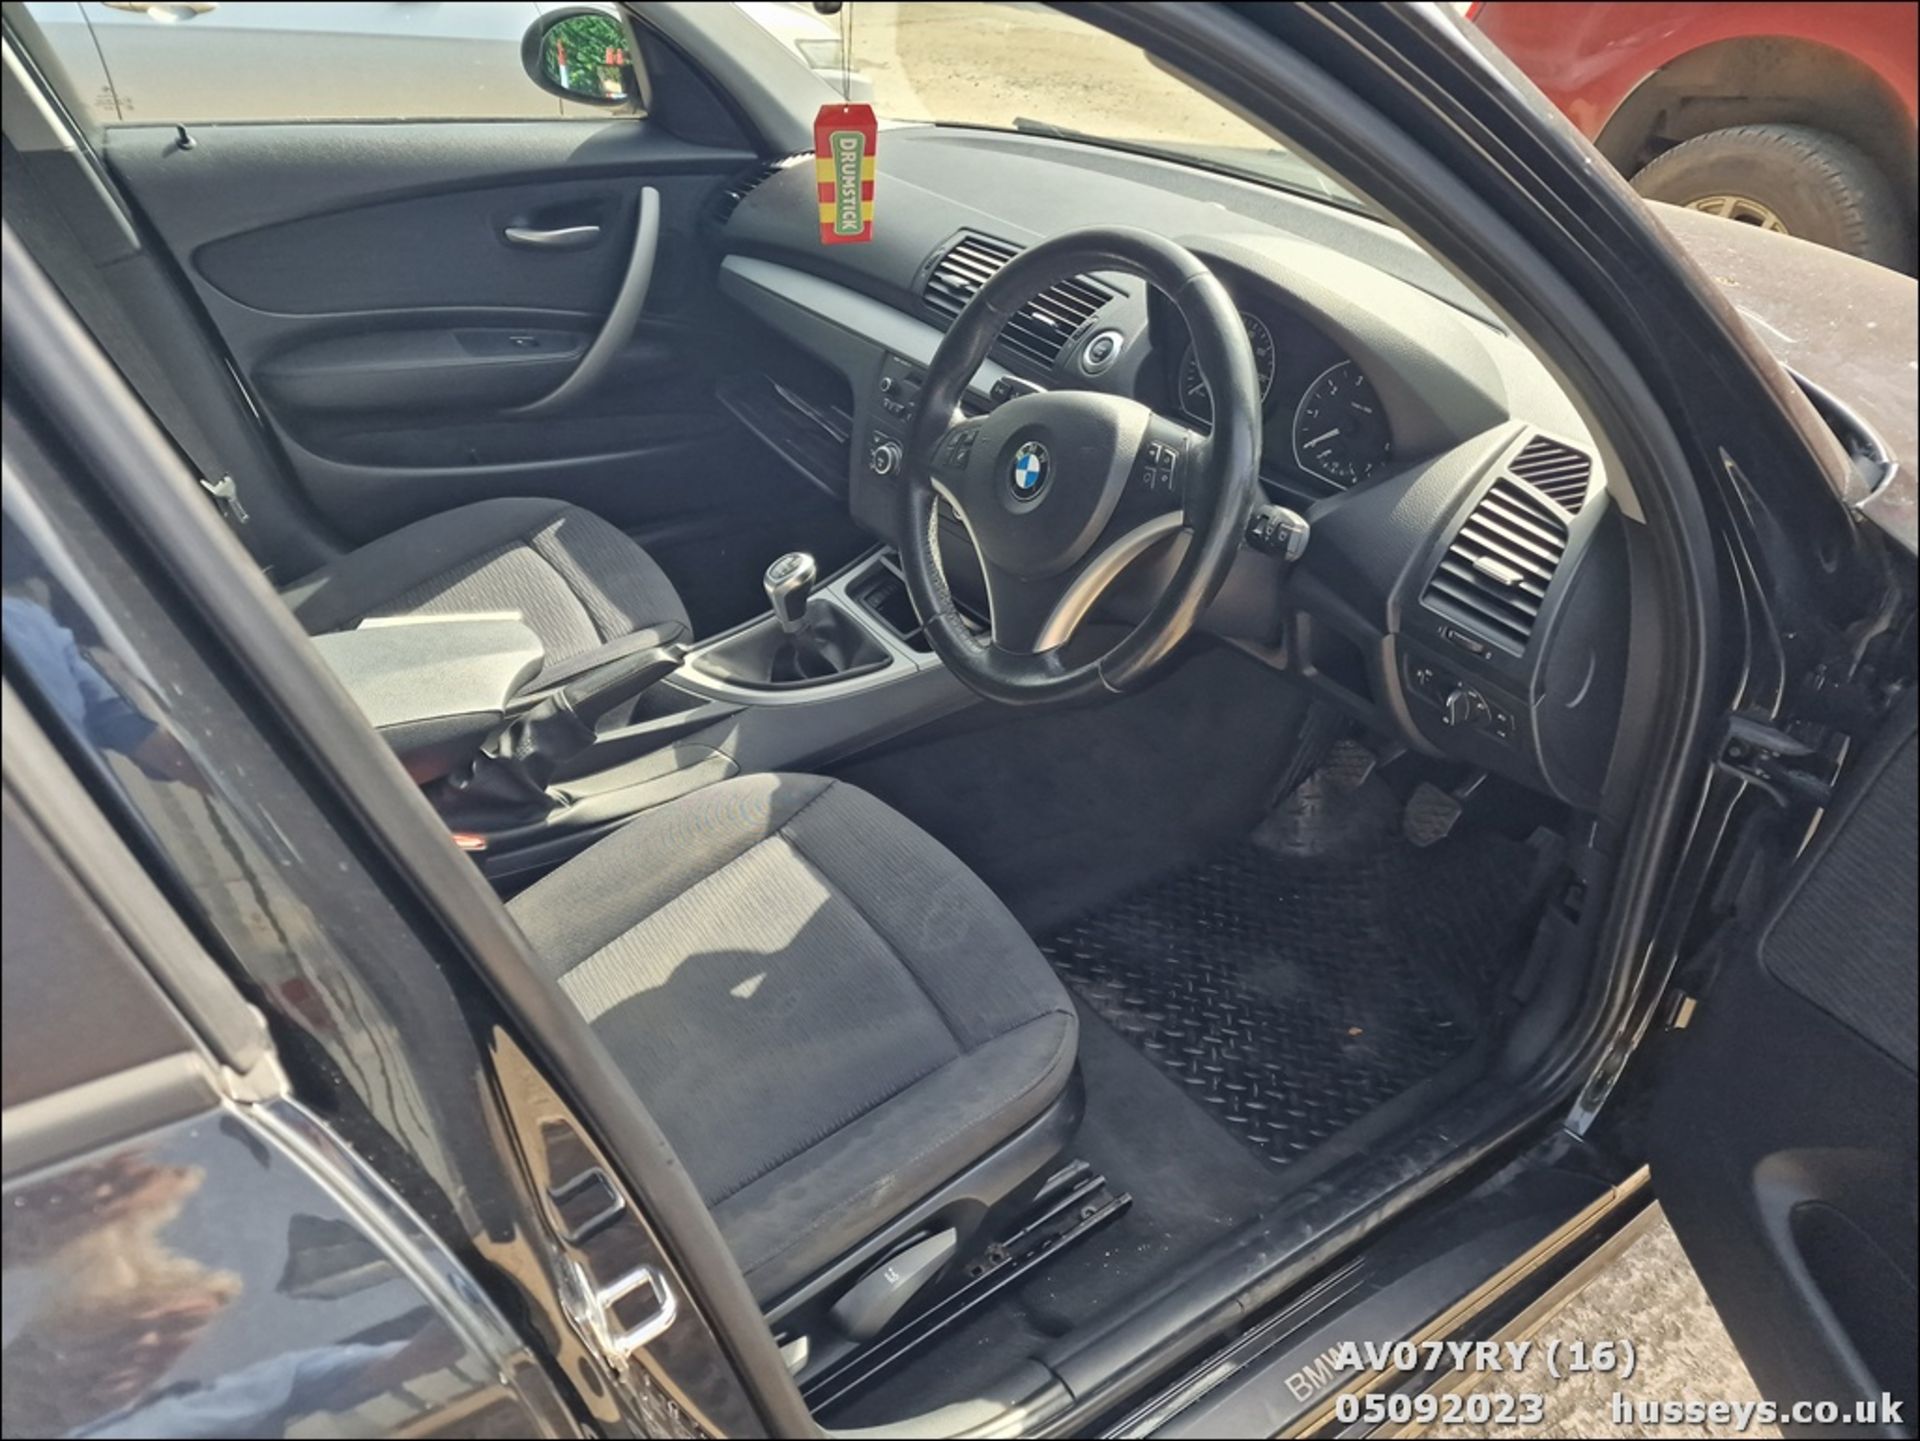 07/07 BMW 116I SE - 1596cc 5dr Hatchback (Black, 102k) - Image 17 of 41